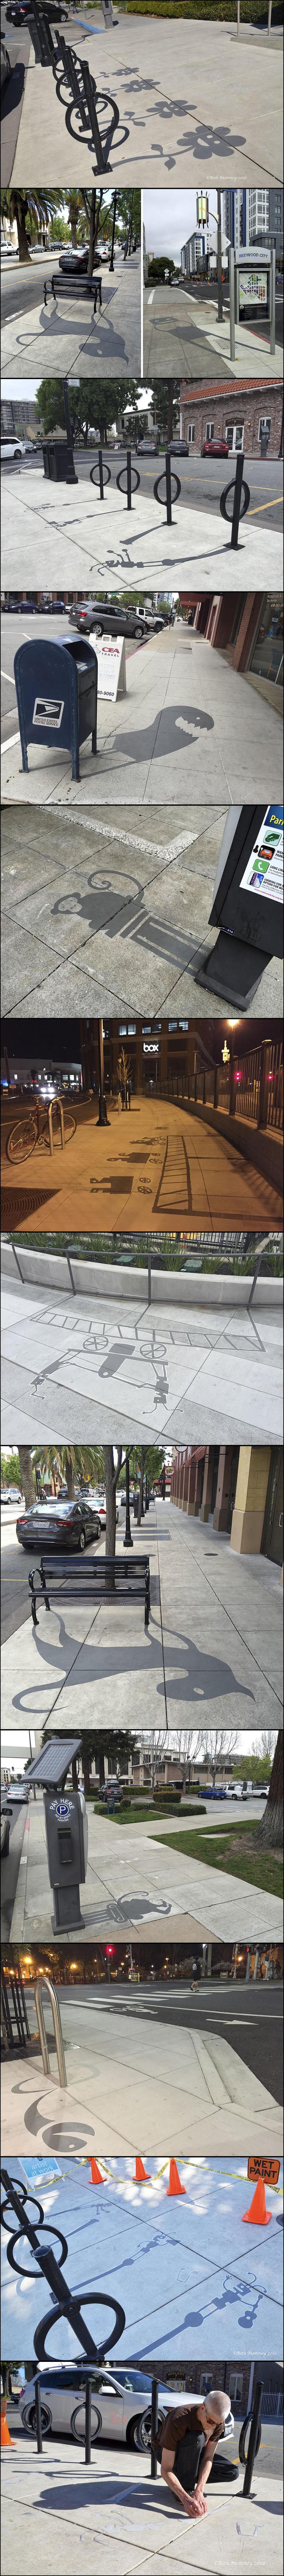 Pour ceux du fond qui n'auraient pas suivi, il peint des ombres insolites aux objets du quotidien dans la rue.
http://www.damonbelanger.com/